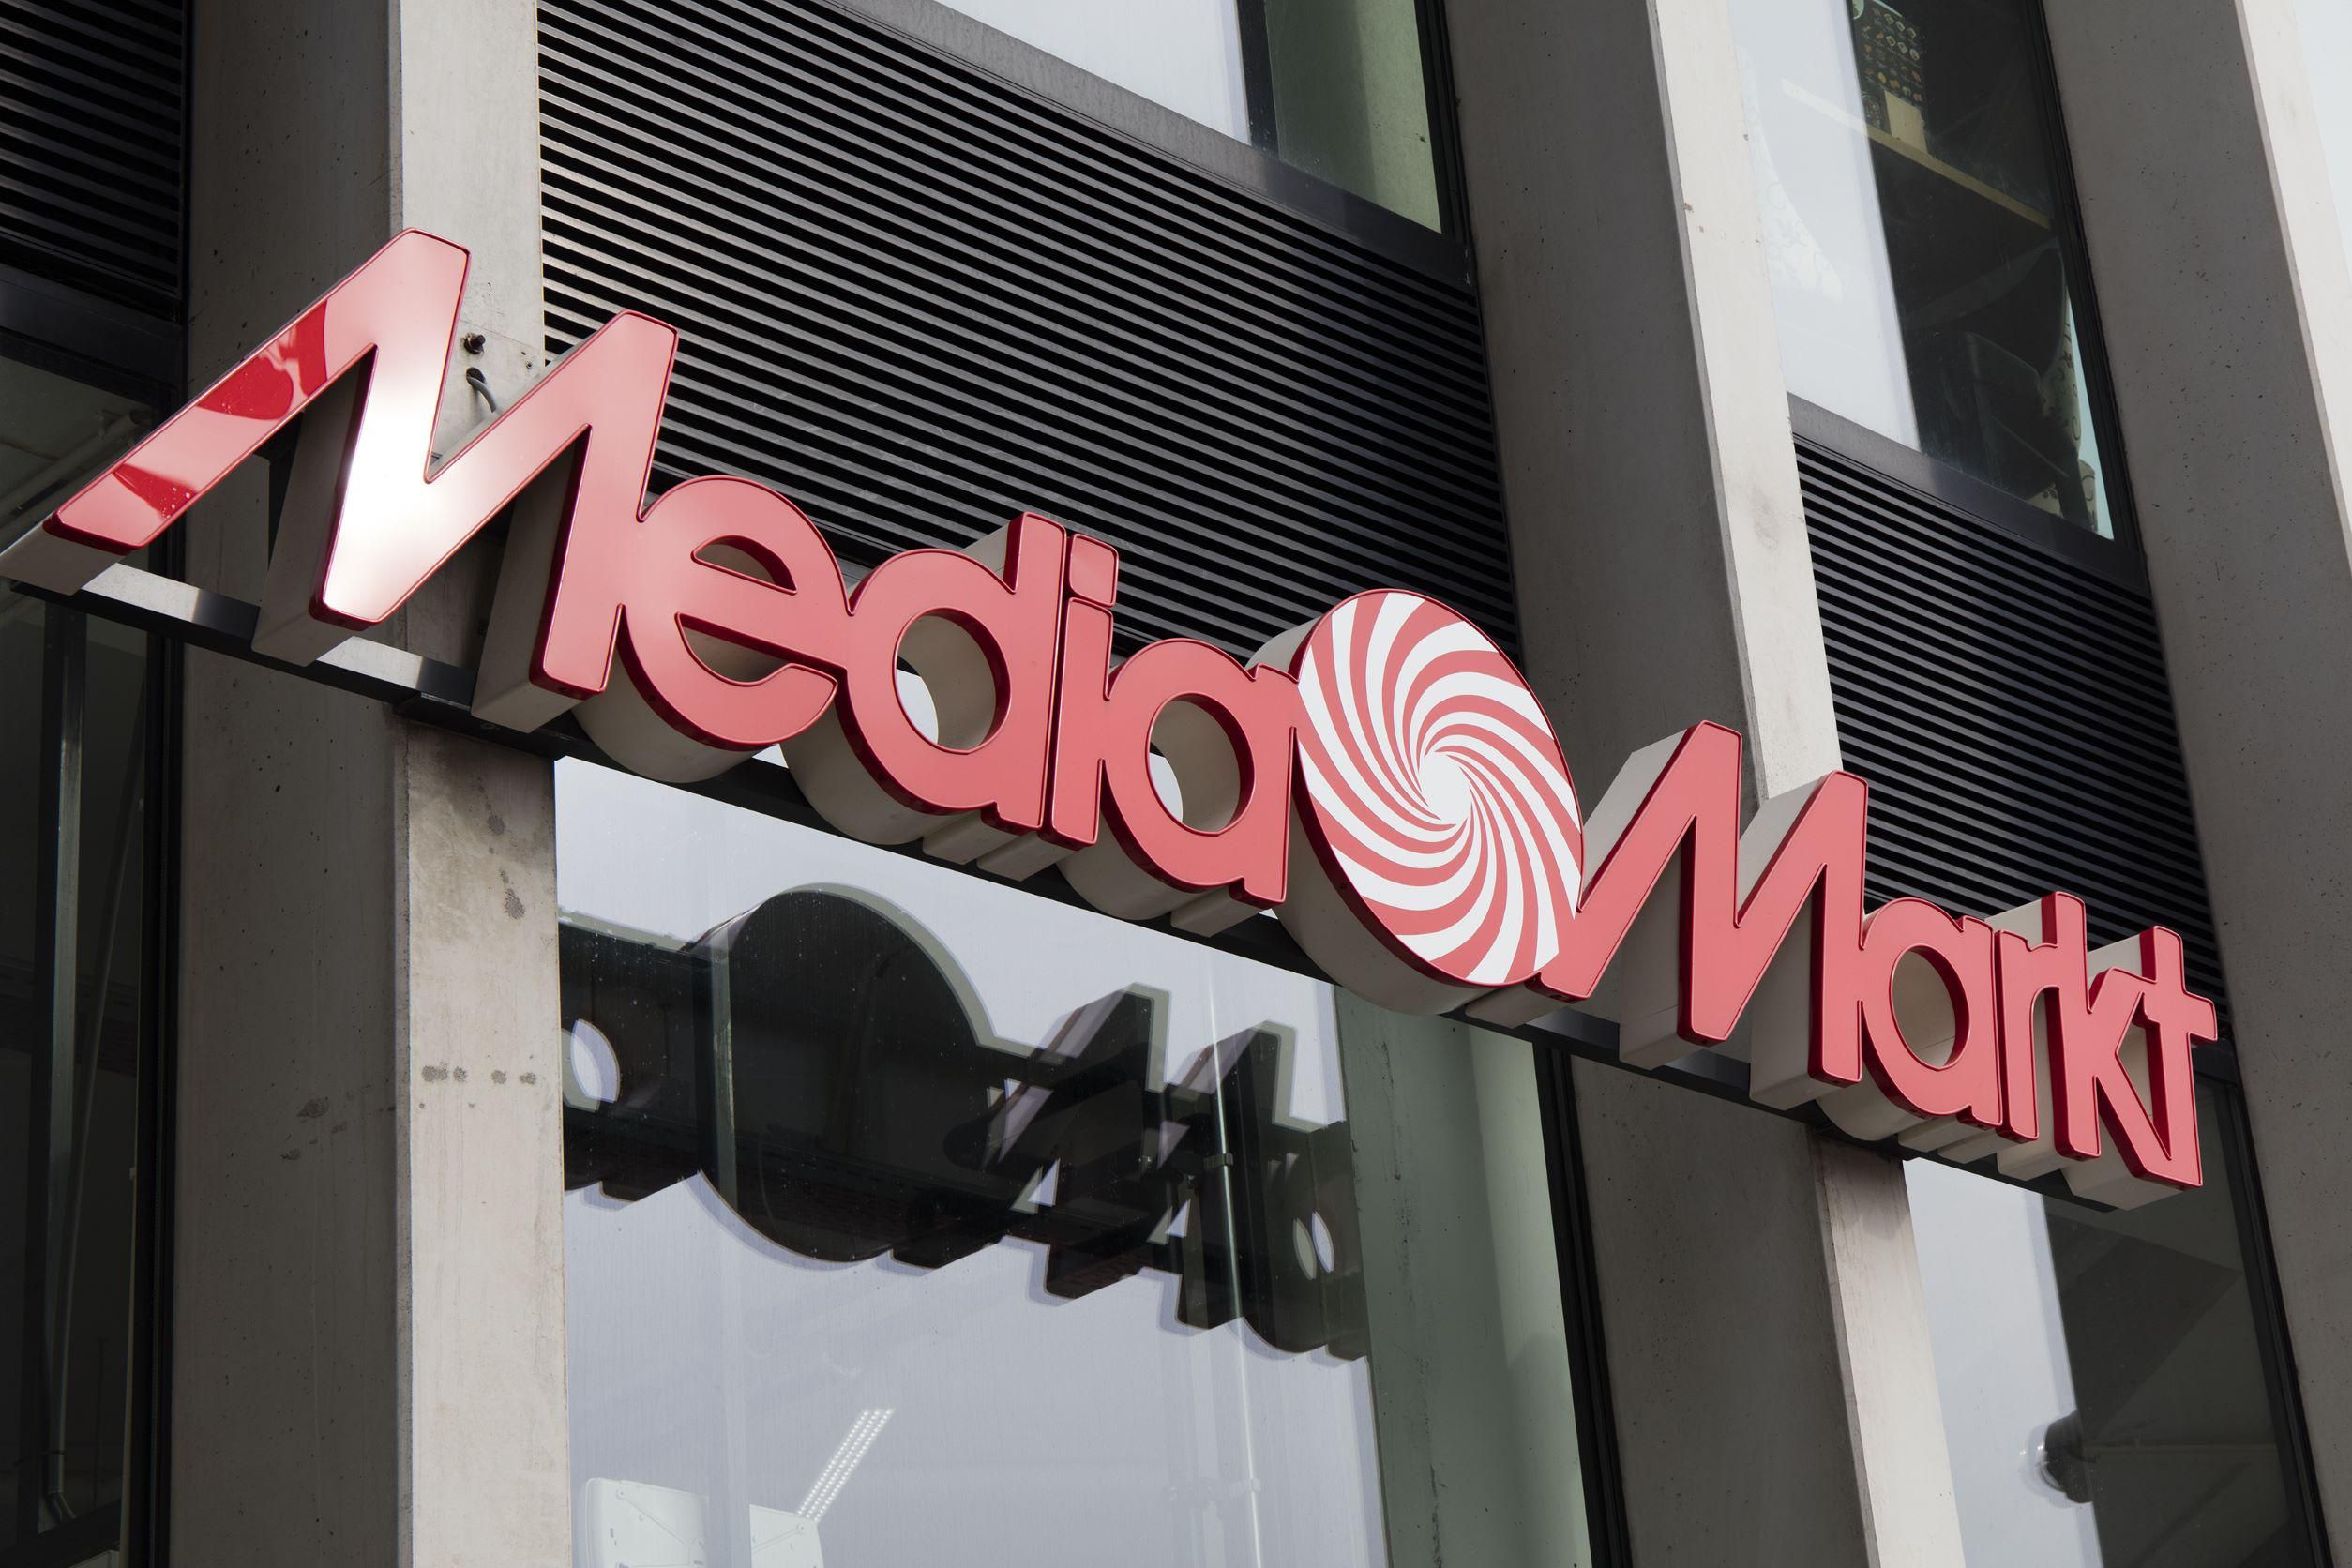 Hackertámadás érte a MediaMarktot, a képen az egyik legnagyobb kárt elszenvedett holland üzlet bejárata